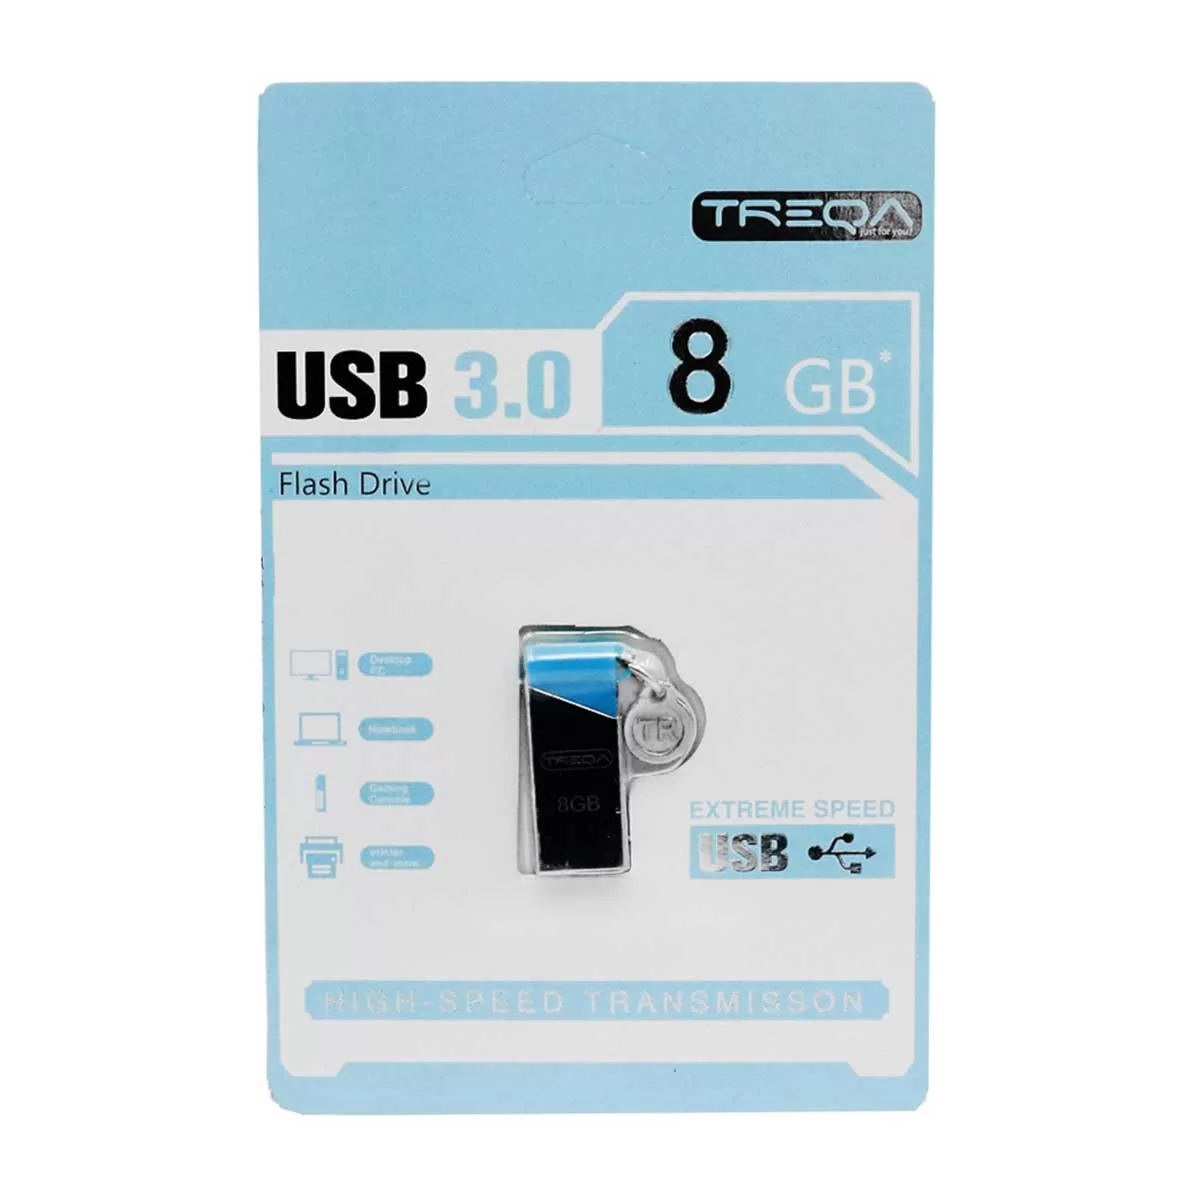 USB Stick 3.0 8GB Treqa UP-03-8GB